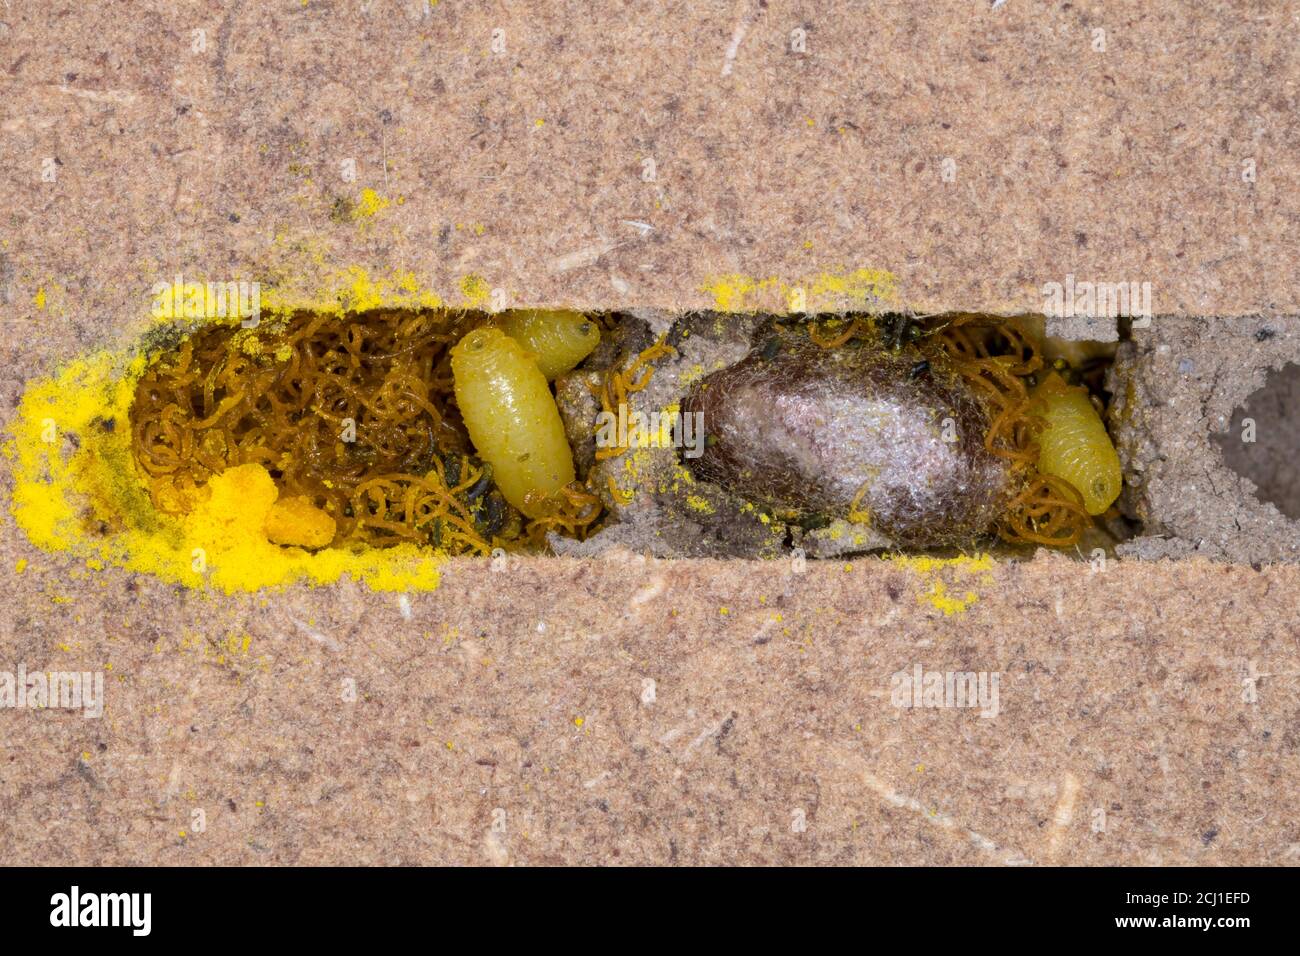 Mouche drosophile, mouche Houdini (Cacoxenus indagator), magrets de mouche et fèces à l'intérieur d'une cellule de reproduction parasitisée d'Osmia bicornis, Allemagne Banque D'Images